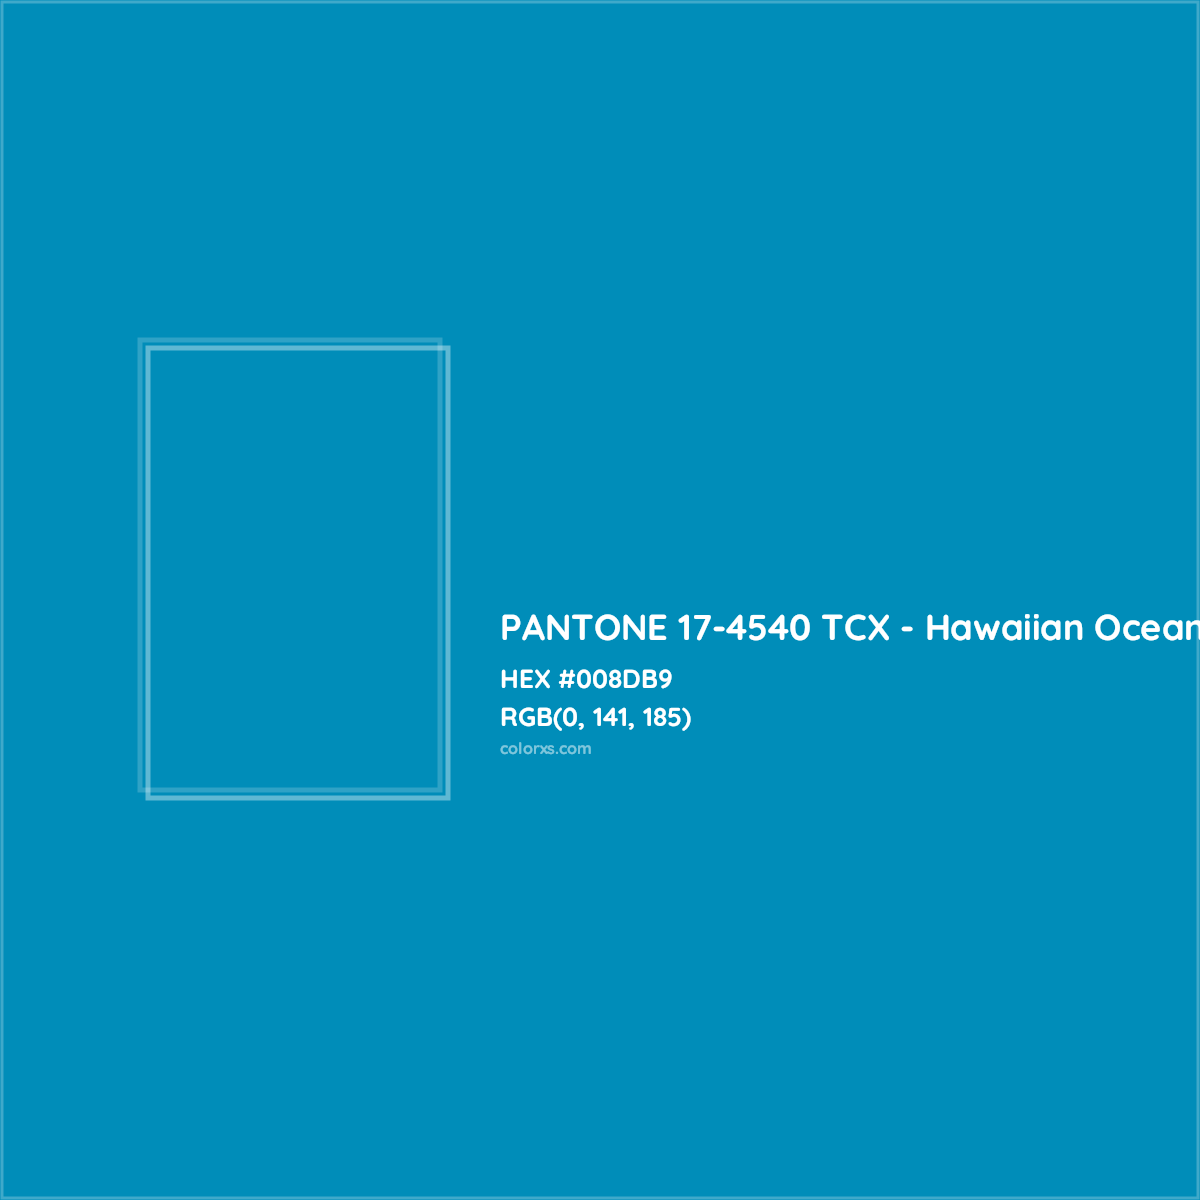 HEX #008DB9 PANTONE 17-4540 TCX - Hawaiian Ocean CMS Pantone TCX - Color Code